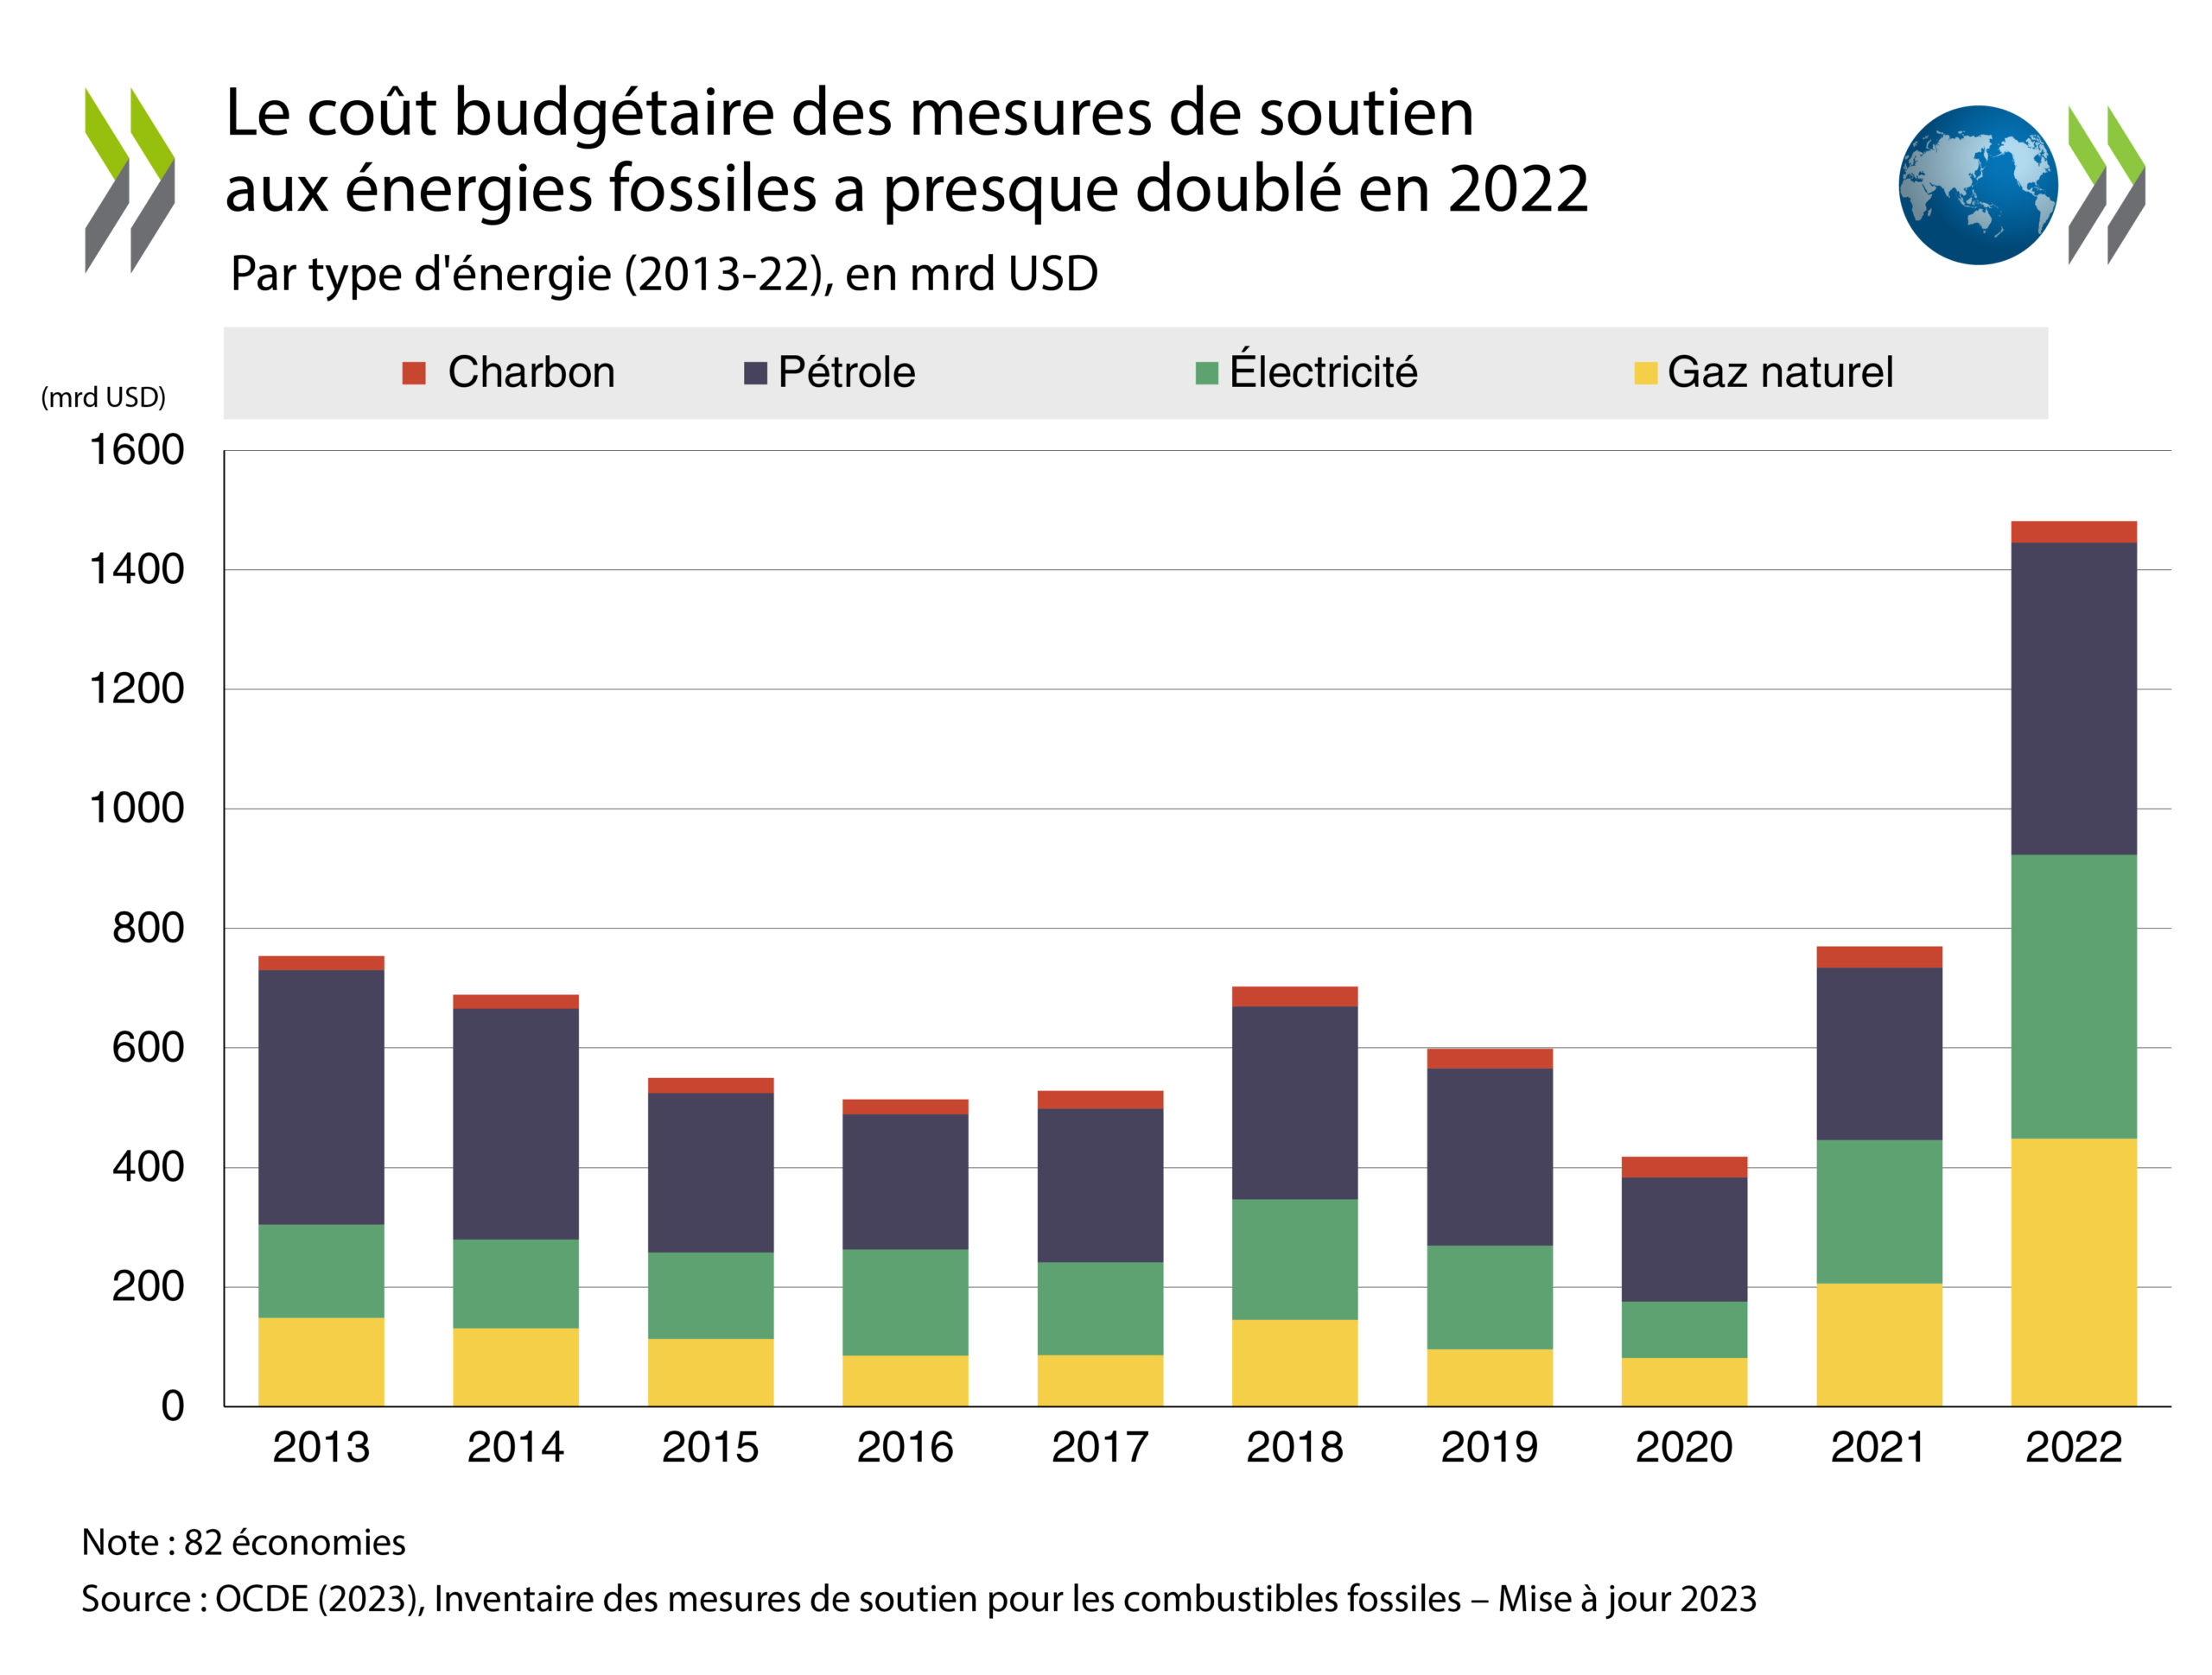 Graphique : Le coût budgétaire des mesures de soutien aux énergies fossiles a presque doublé en 2022